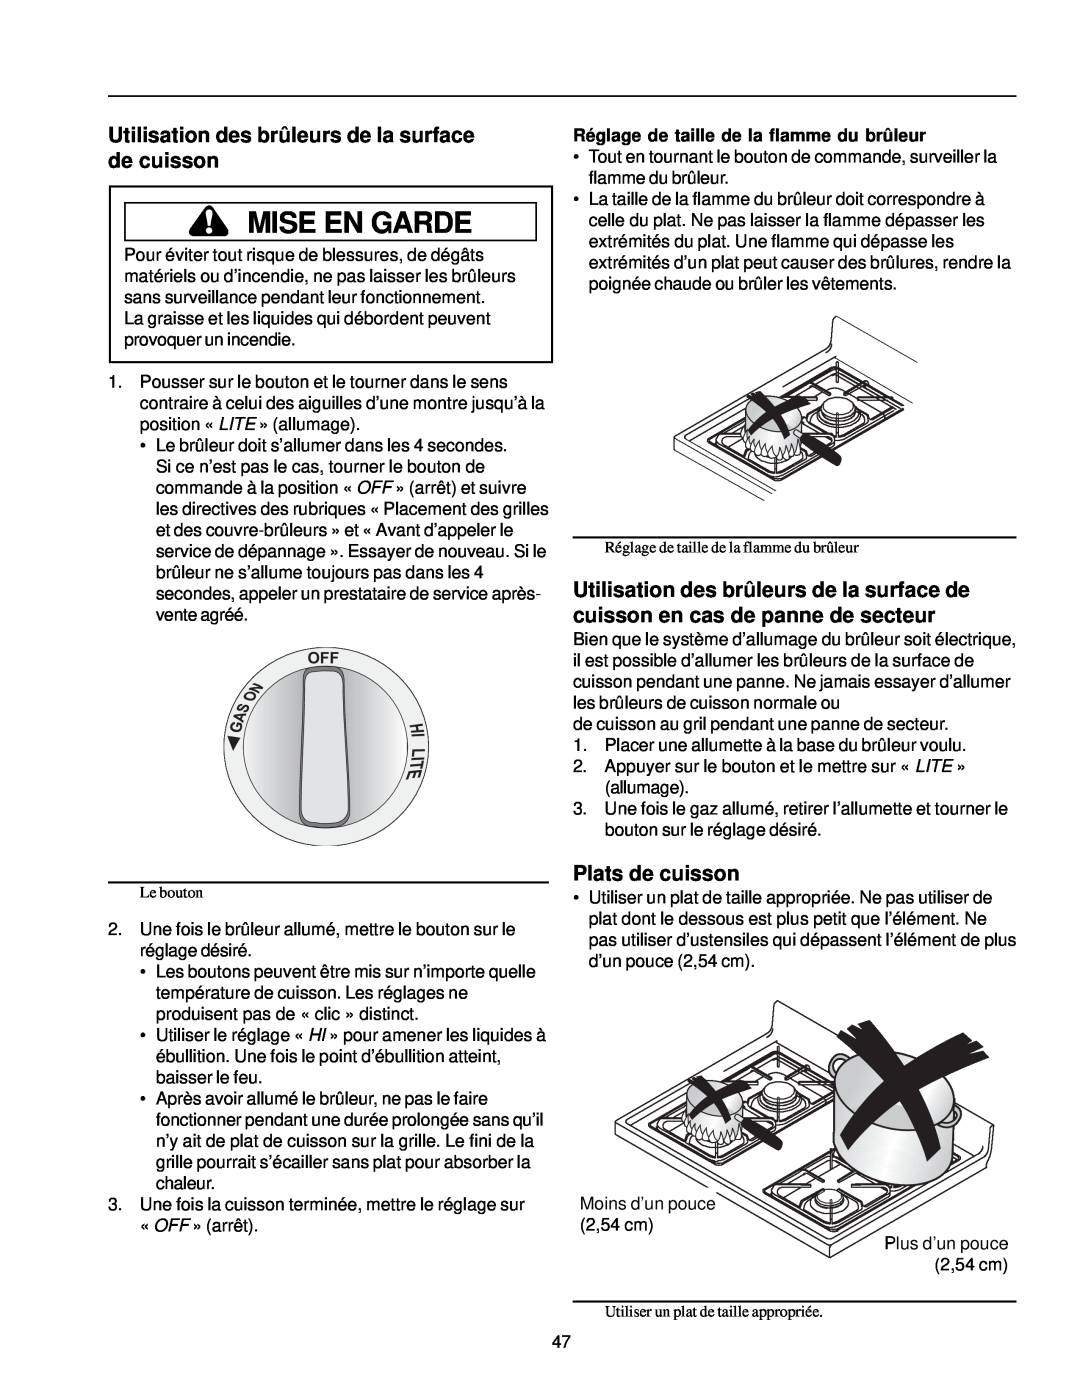 Amana ARG7302 manual Utilisation des brûleurs de la surface de cuisson, Plats de cuisson, Mise En Garde 